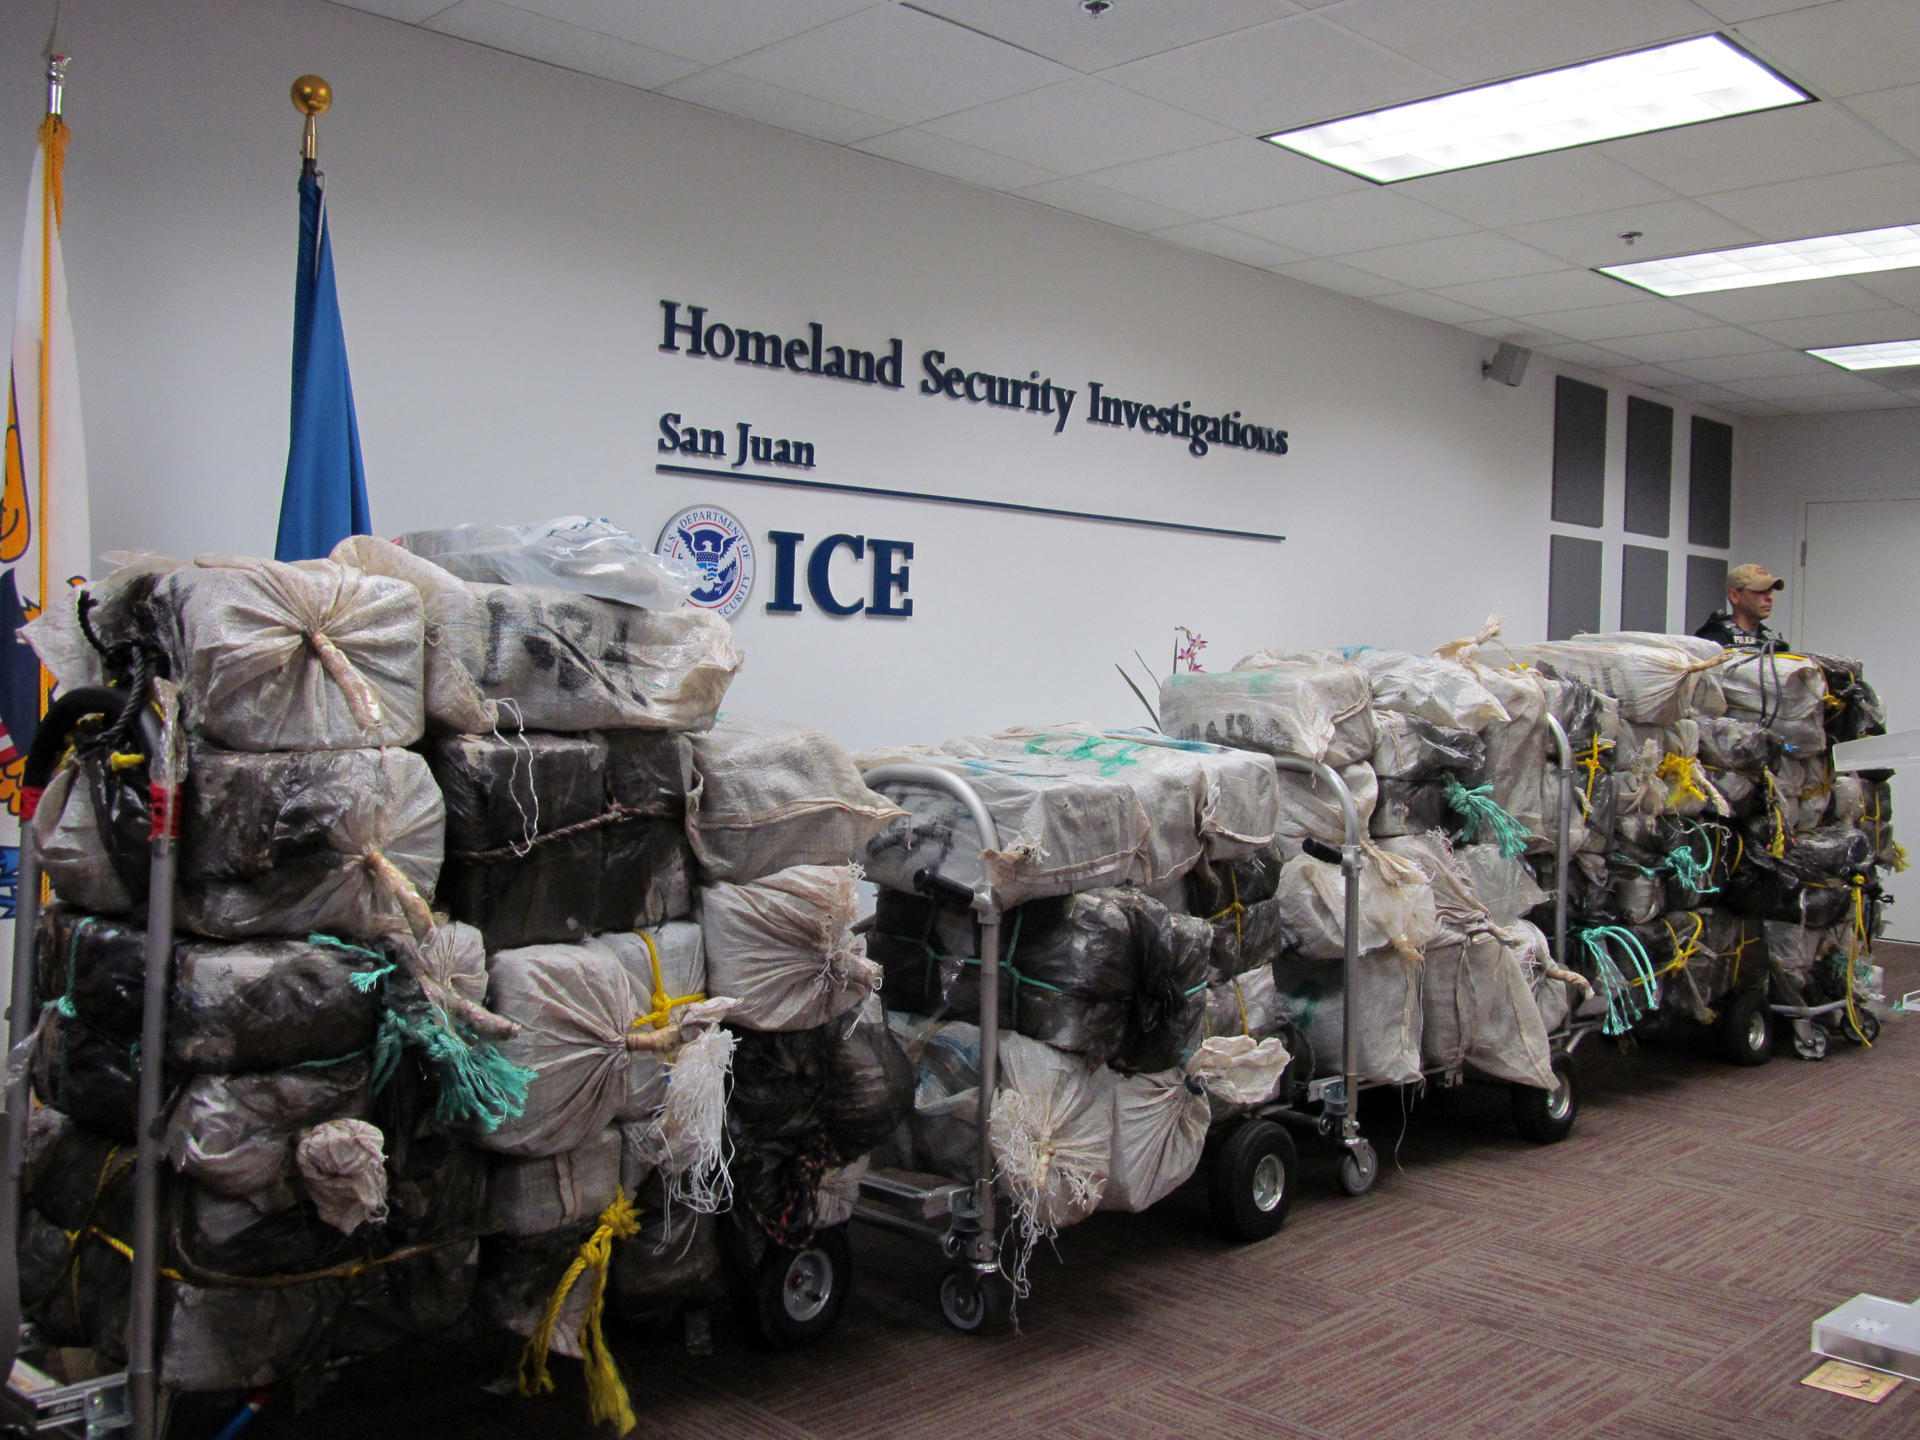 Un agente de la Agencia de Aduanas y Protección Fronteriza (ICE) custodia unos bultos que contienen kilos de cocaína durante su presentación en una rueda de prensa. Imagen de archivo. EFE/Jorge Muñiz
